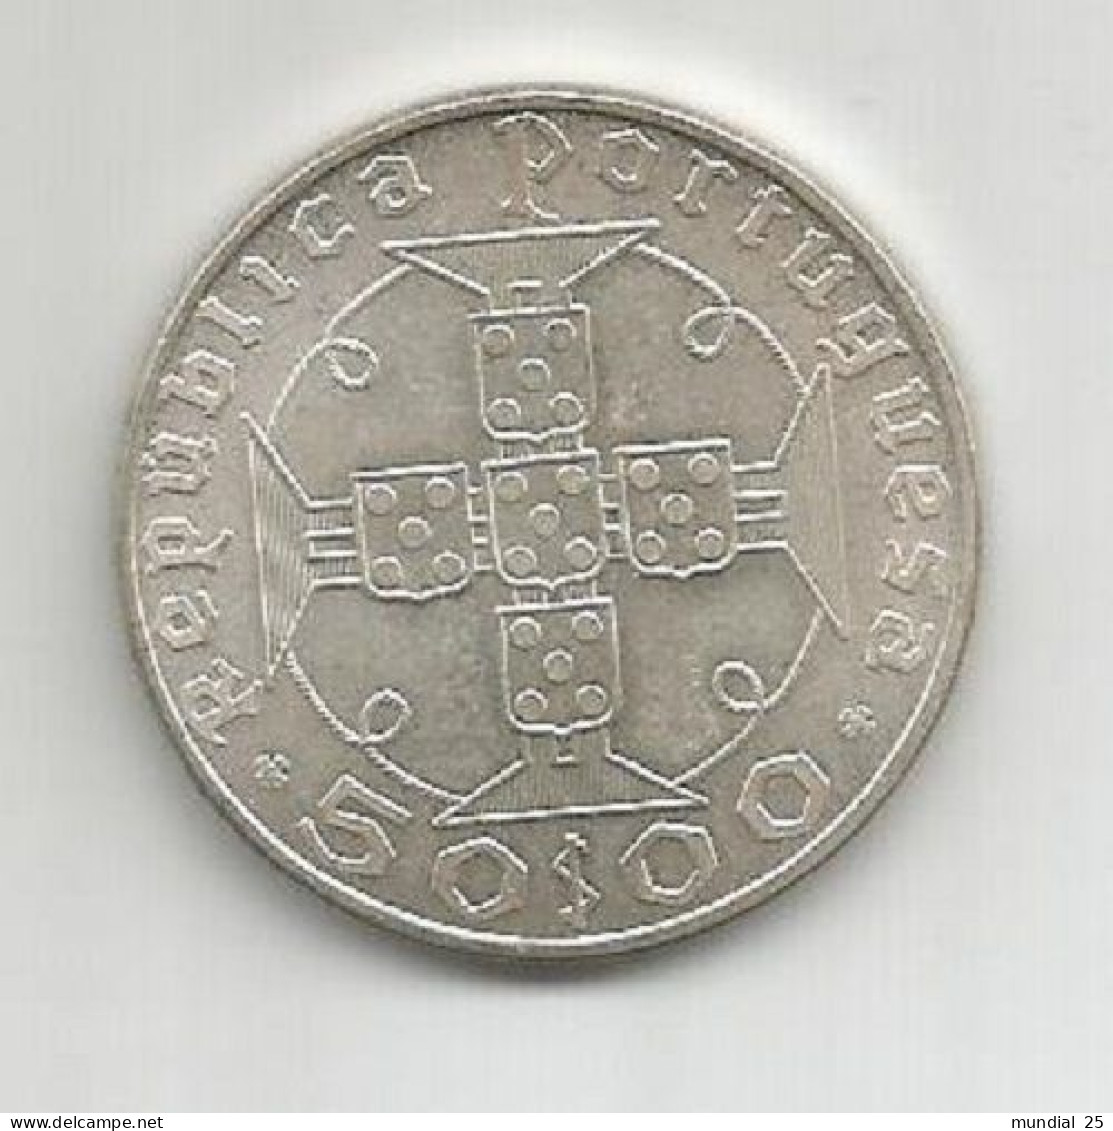 SAO TOME AND PRINCIPE PORTUGAL 50$00 ESCUDOS 1970 SILVER - Sao Tome And Principe